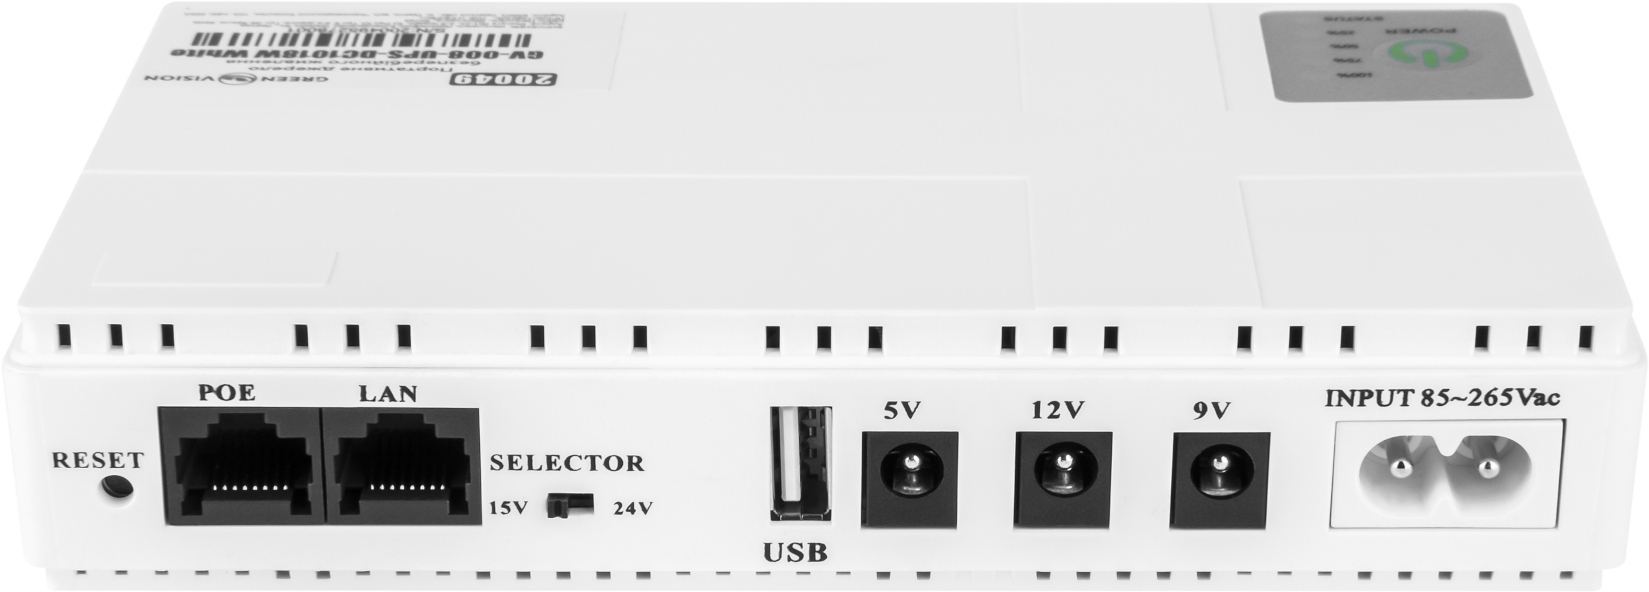 Портативный источник бесперебойного питания GreenVision GV-008-UPS-DC1018W White (20049) цена 1288.00 грн - фотография 2